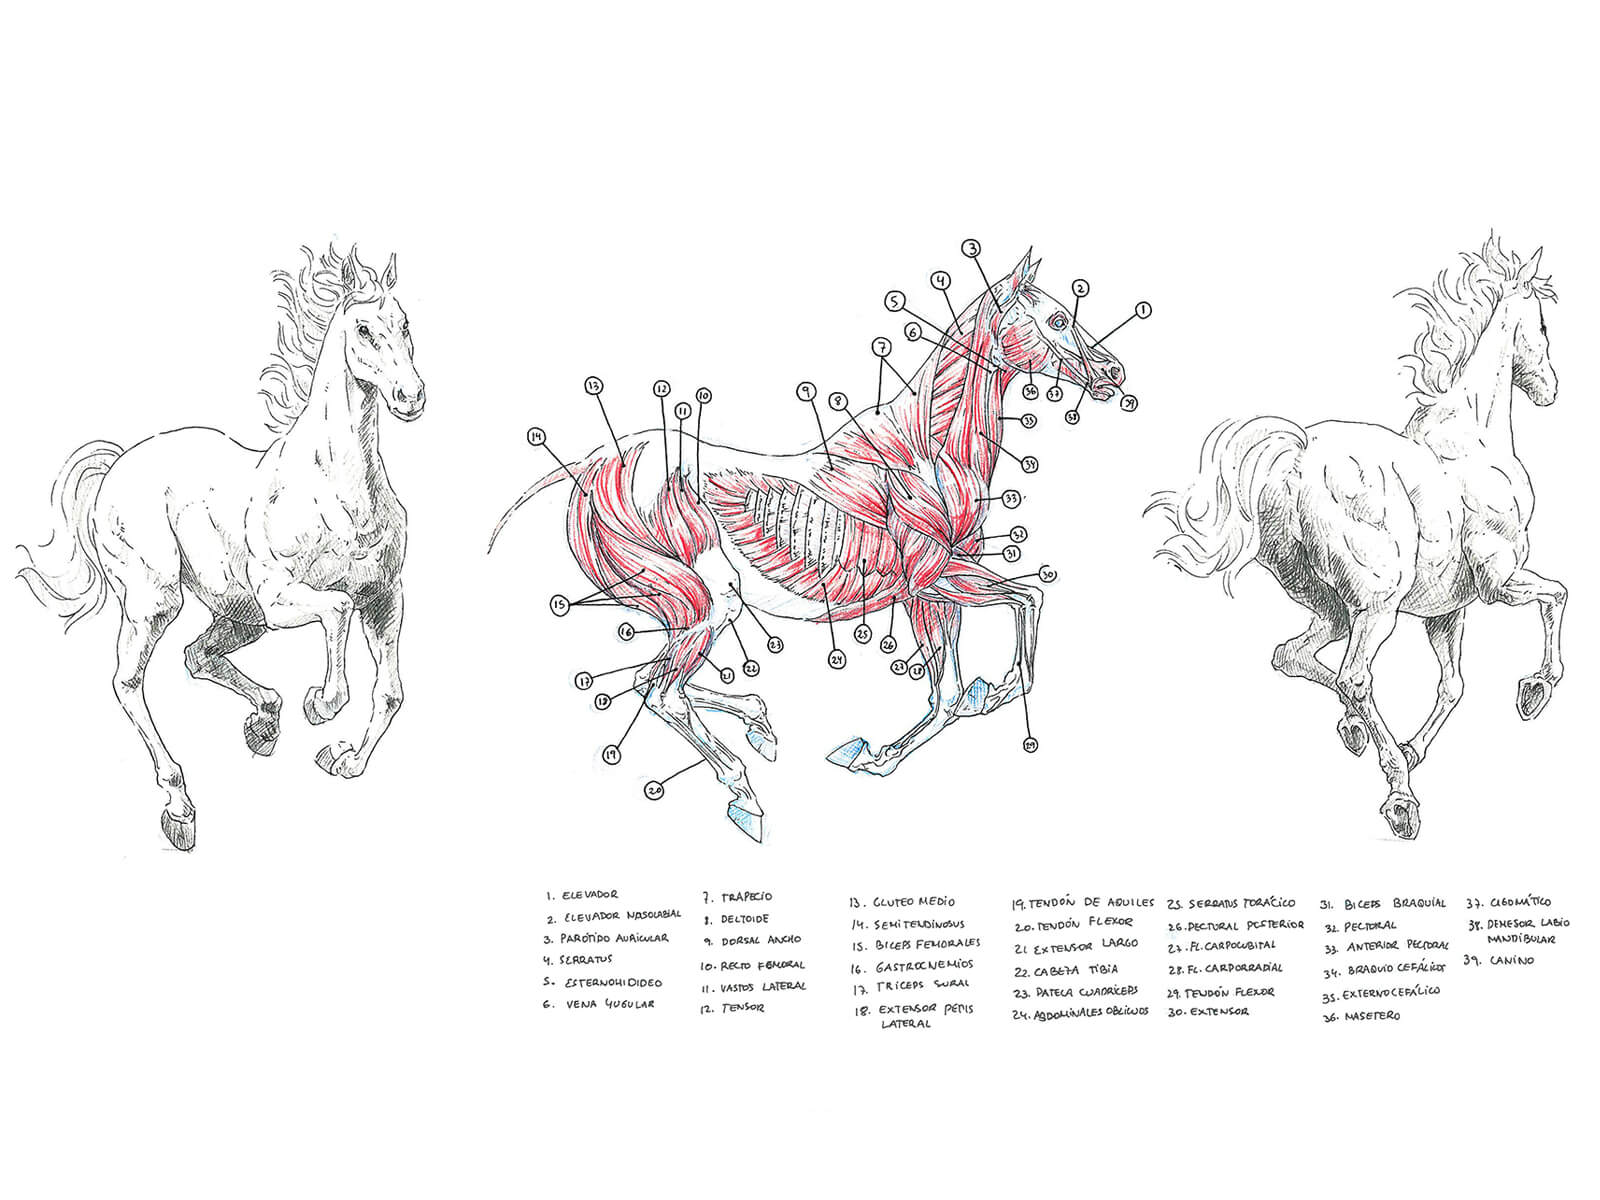 Bocetos anatómicos en blanco, negro y rojo de un caballo galopando y la sección transversal de su sistema muscular.